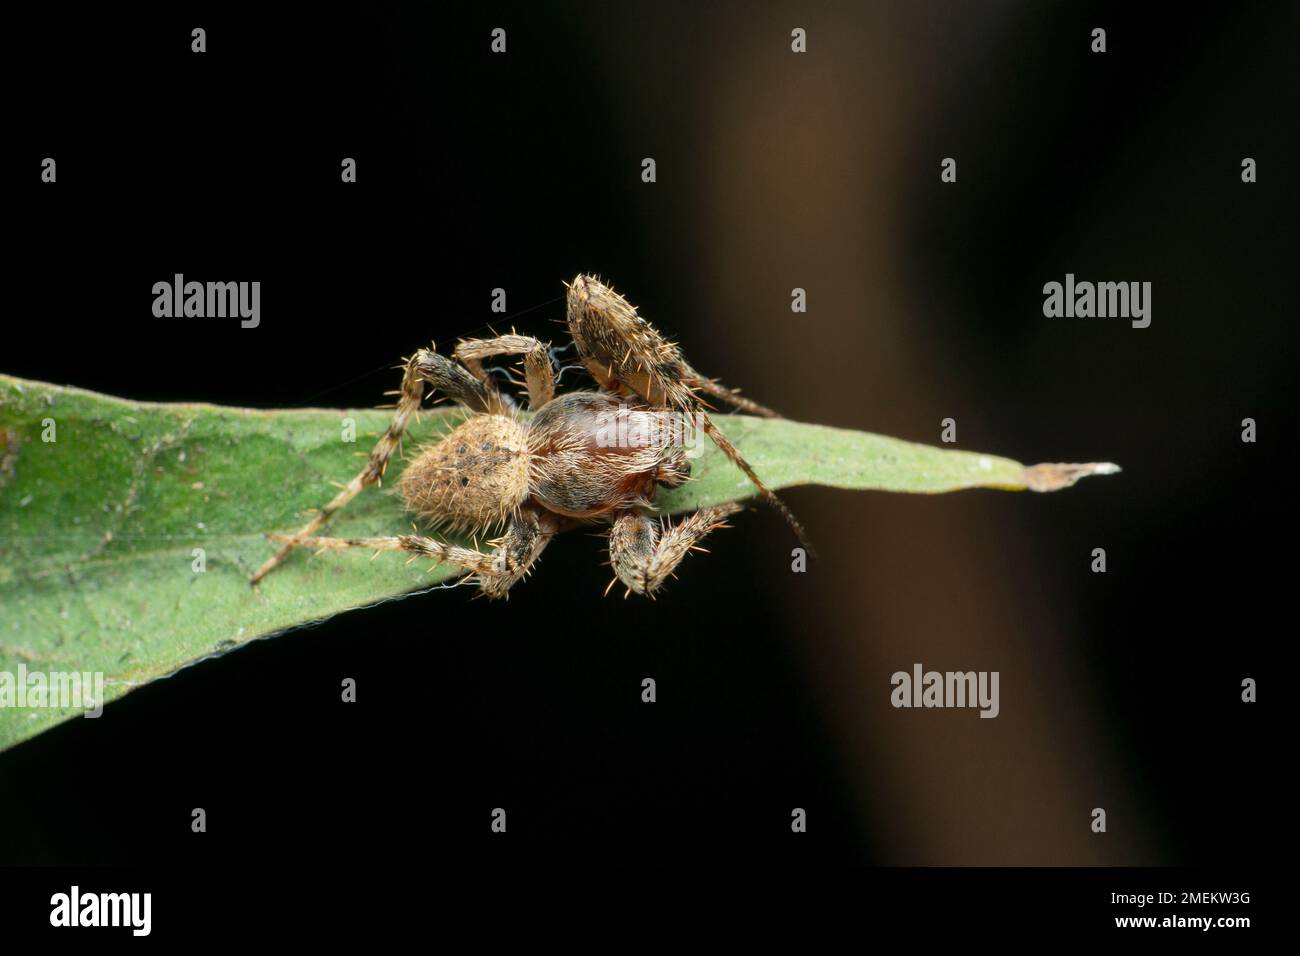 Orb weaver spider, Satara, Maharashtra, India Stock Photo